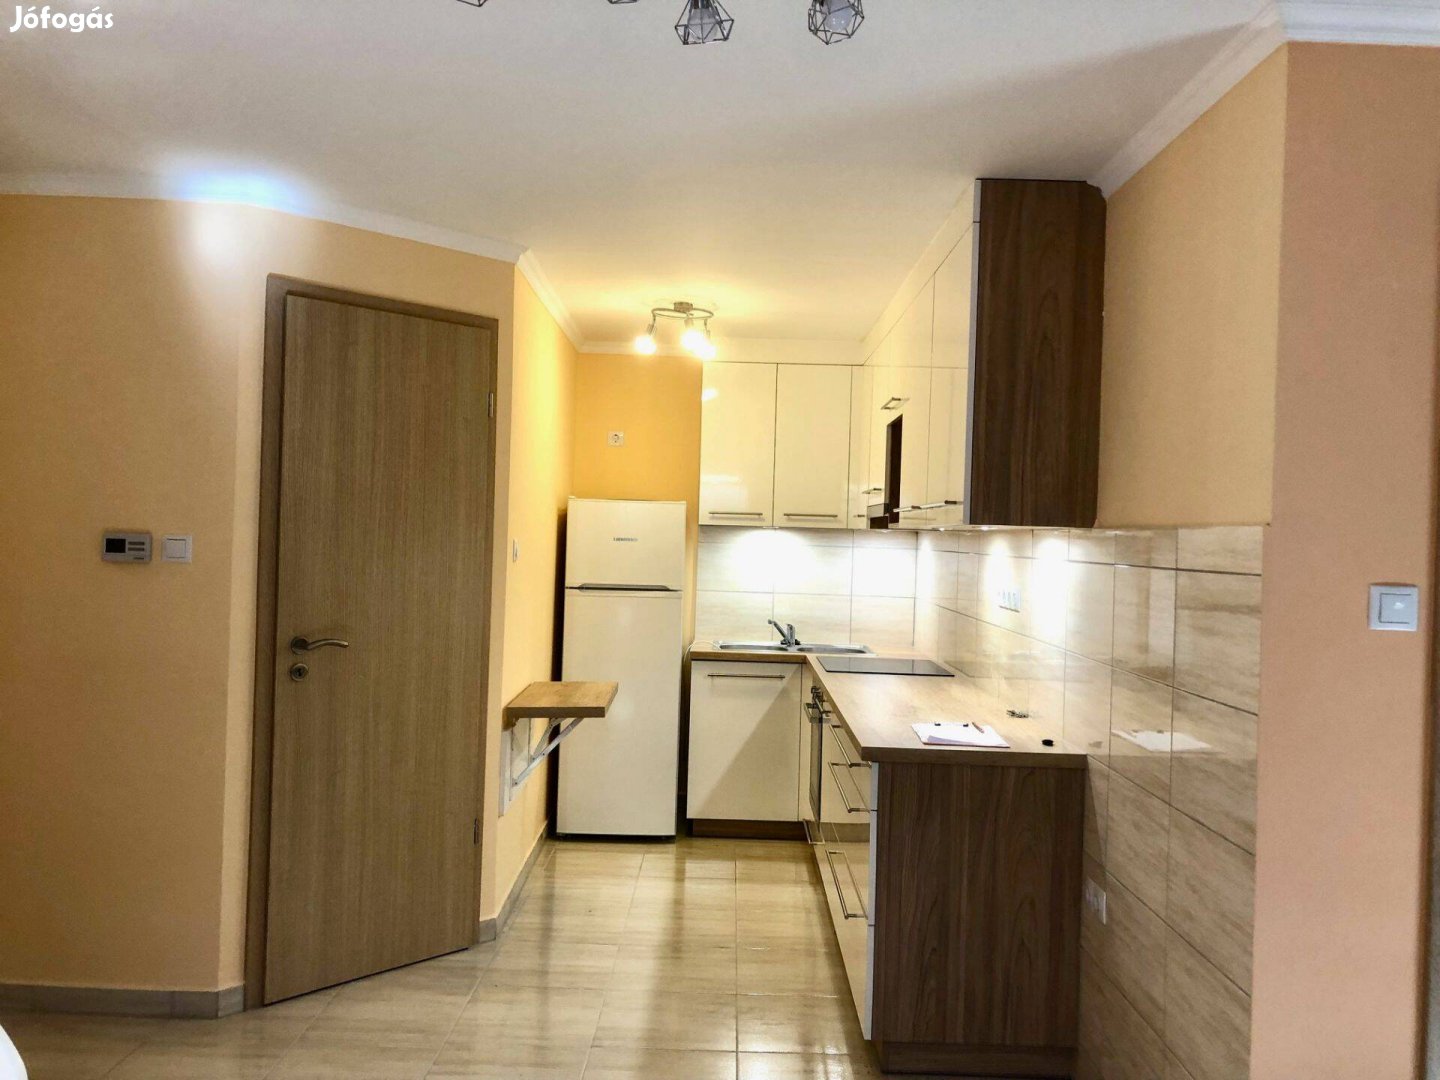 Győr-Szabadhegyen eladó egy III. emeleti, nappali + 2 szobás lakás